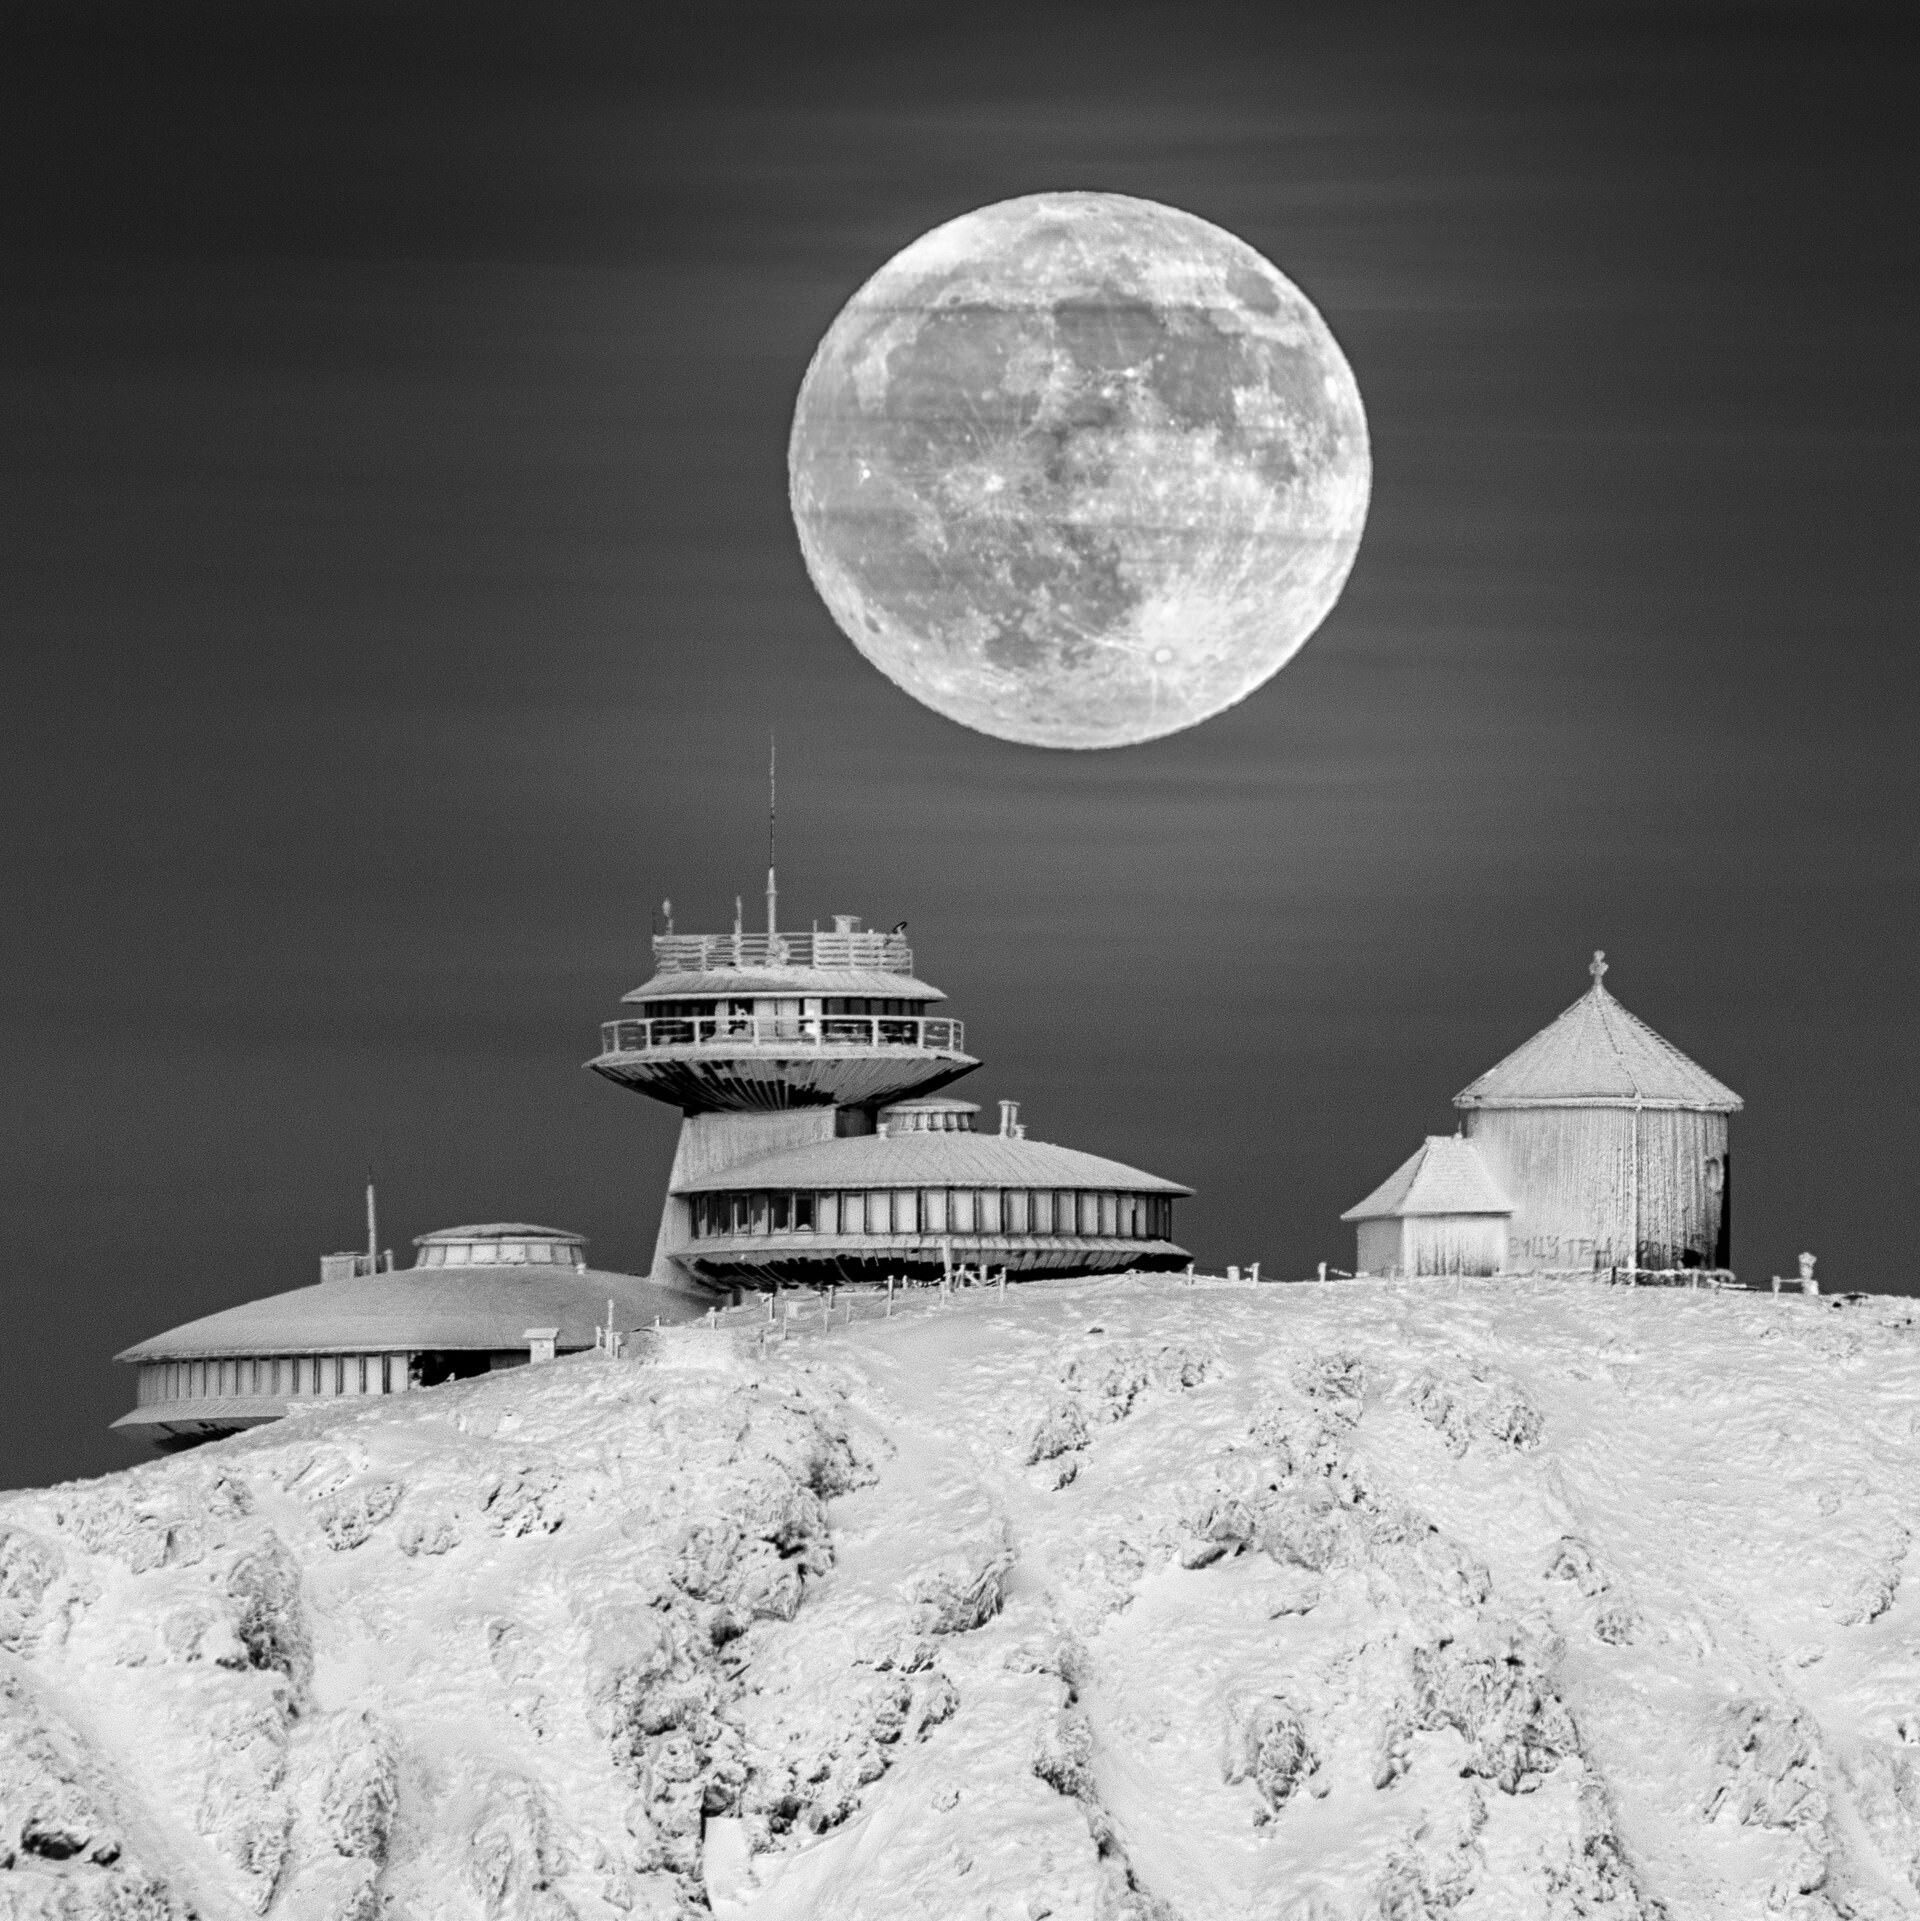 Лунная база. Автор - Даниэль Кошела, Польша. Высокая оценка в категории "Наша Луна"